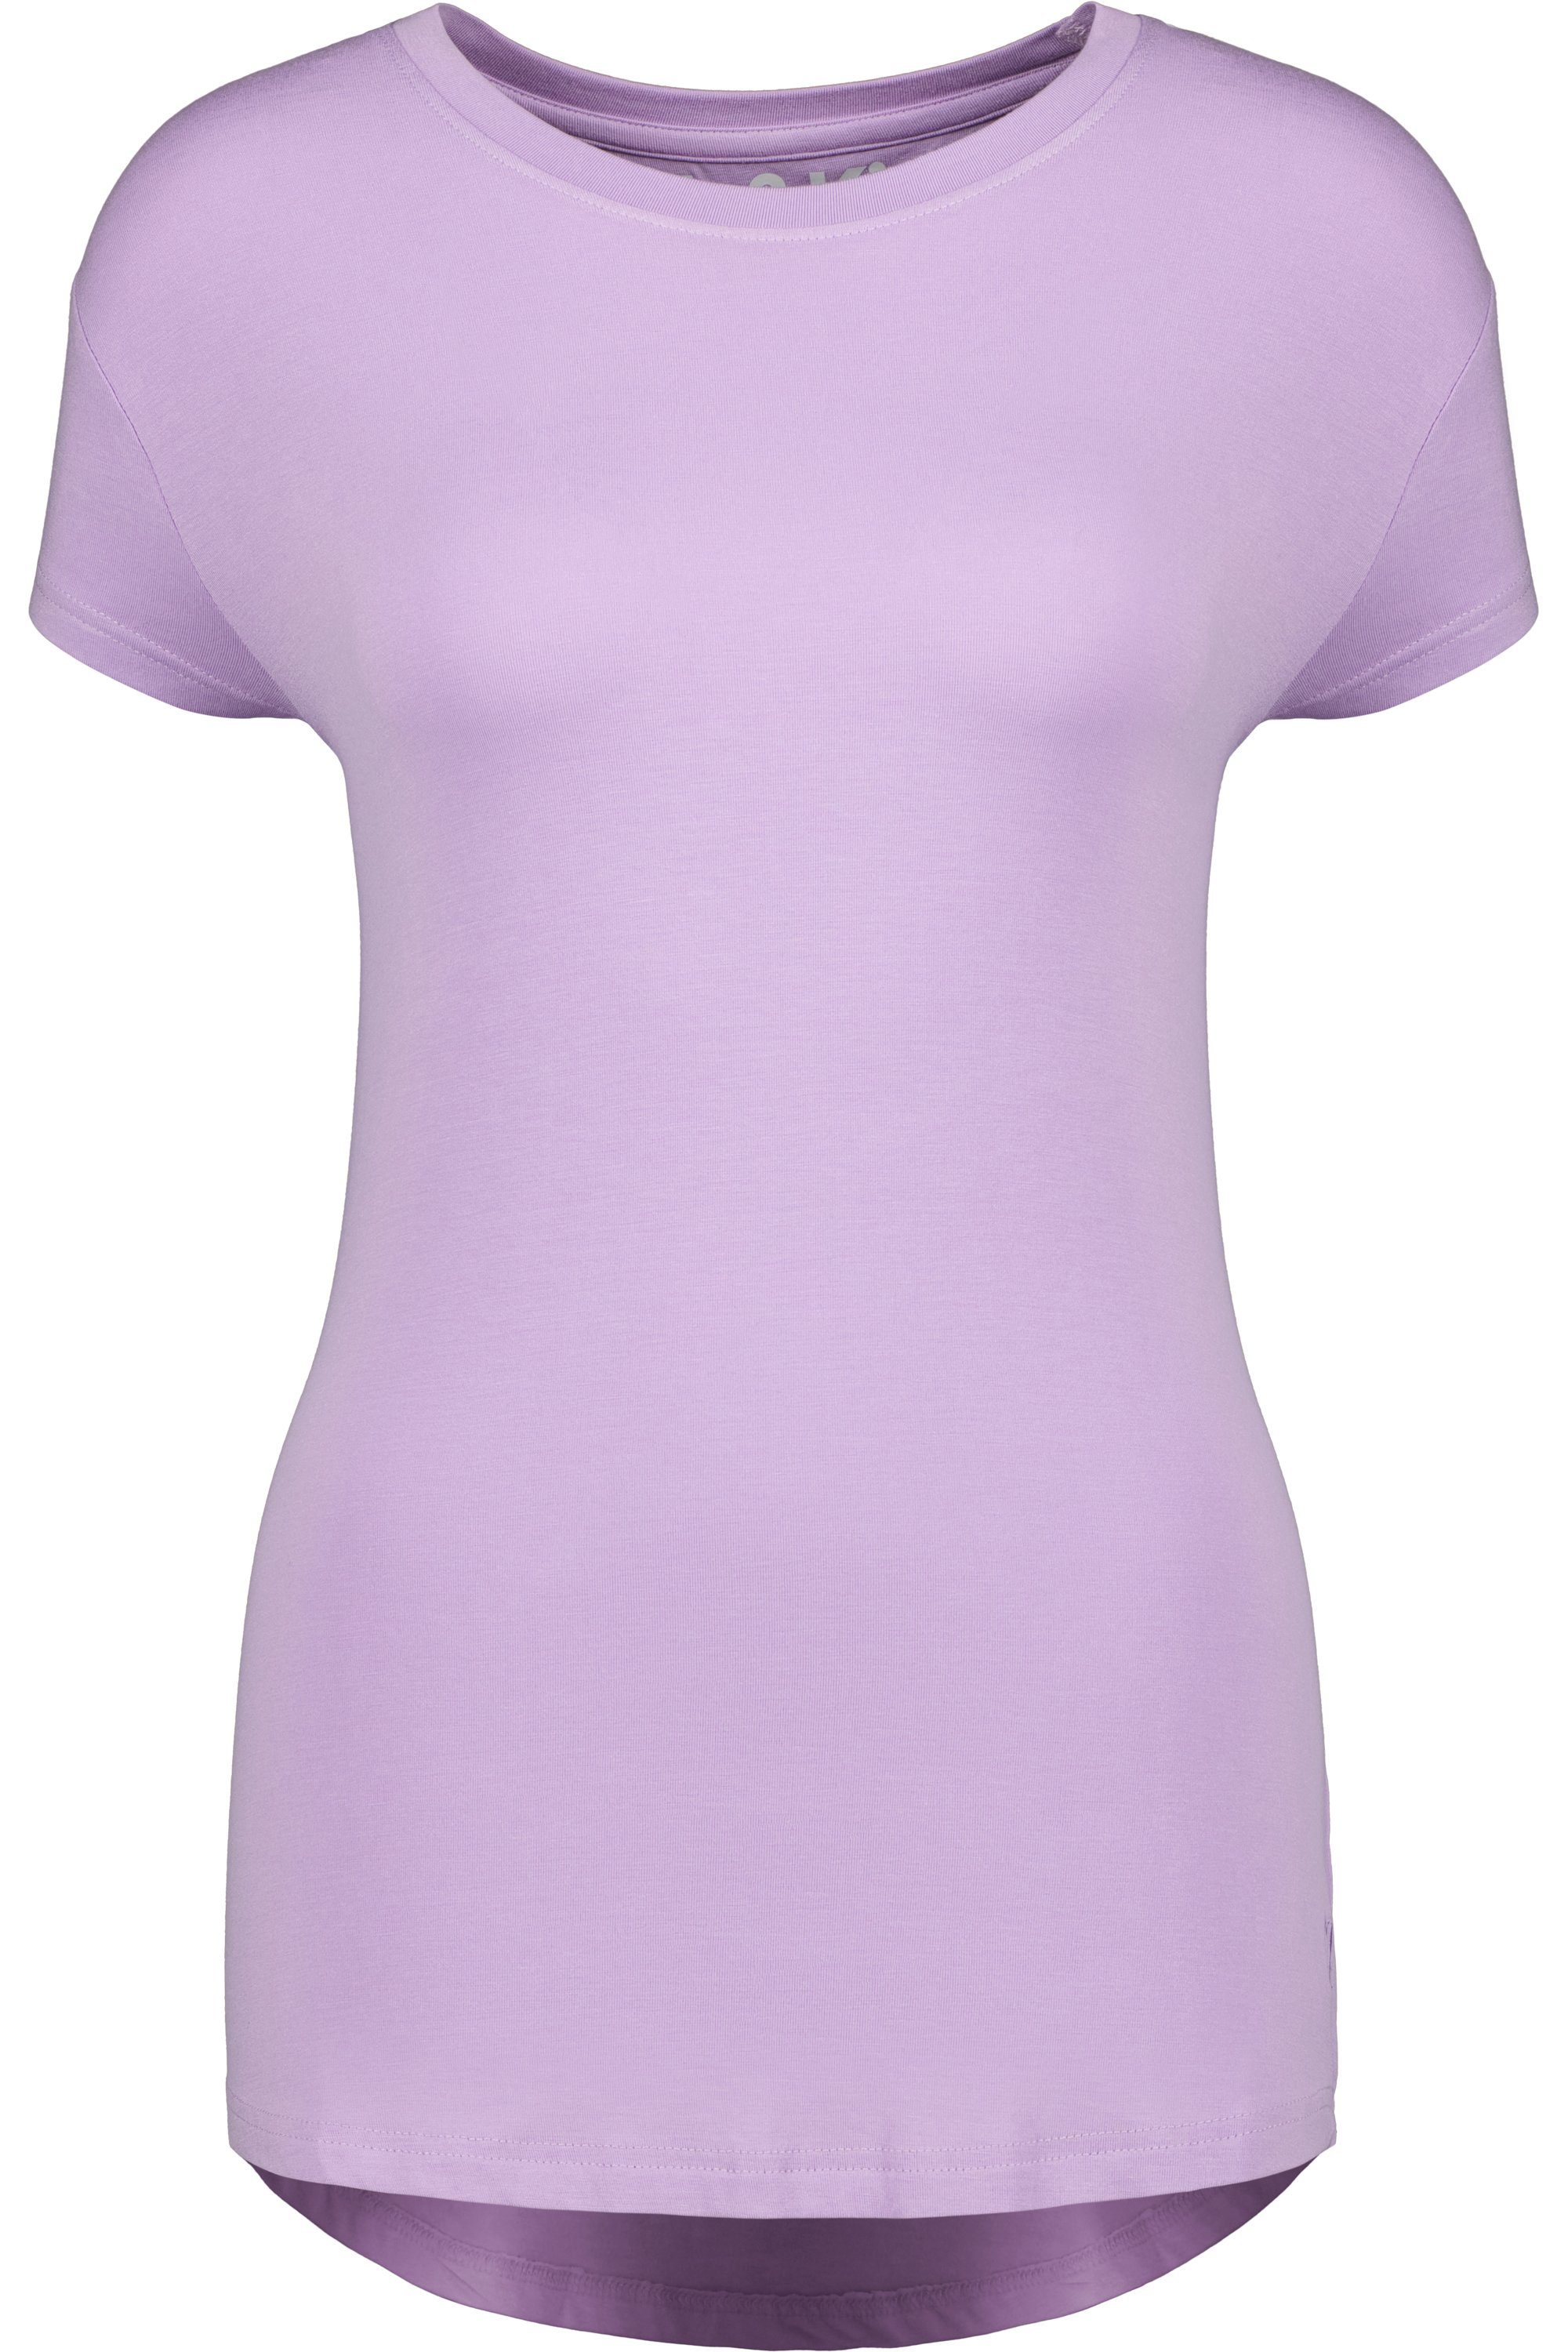 Alife lavender Shirt Damen Kickin & digital Shirt Rundhalsshirt Kurzarmshirt, A MimmyAK